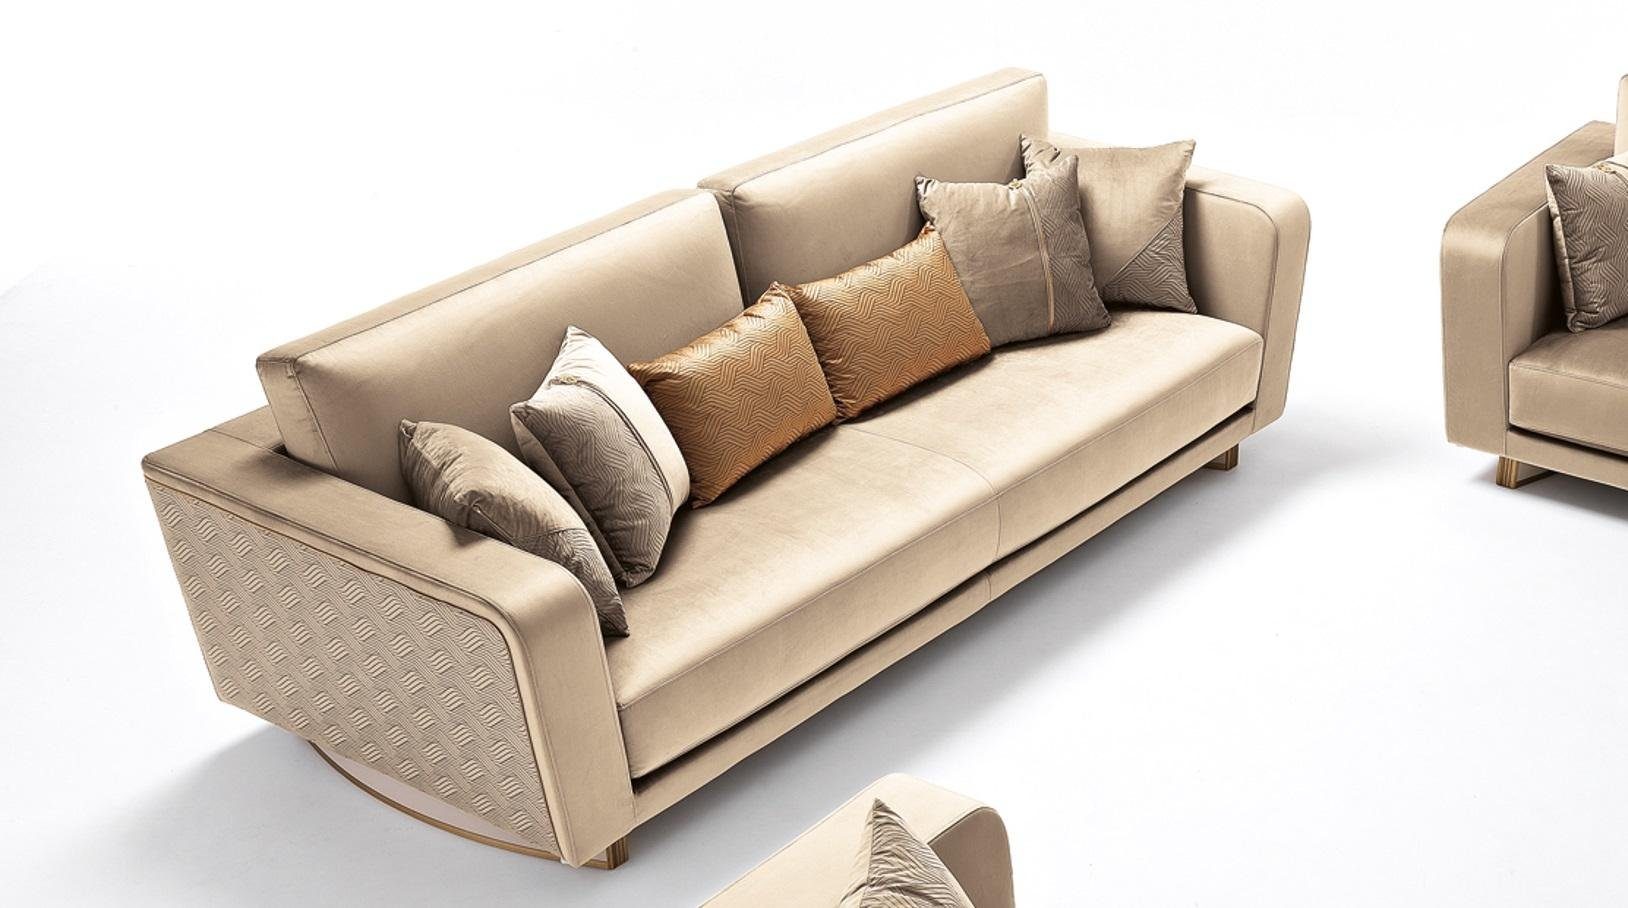 Dreisitzer Modern Europe in Made Design Sofa Couch Polster 3er JVmoebel Sofa Sofa,